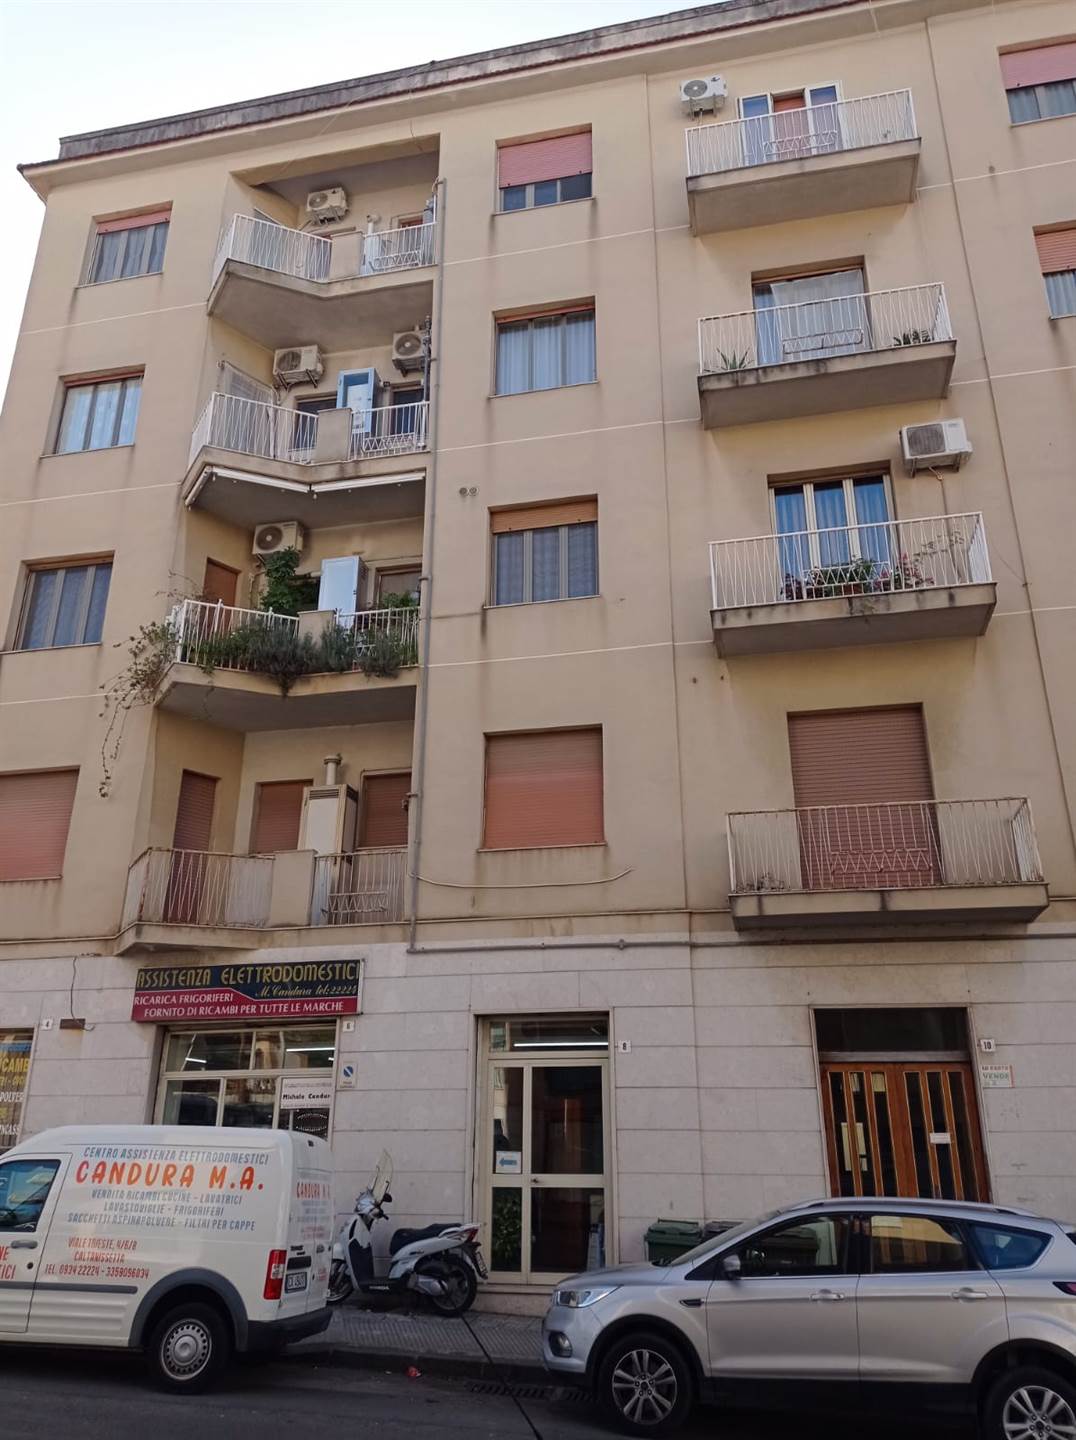 Appartamento in Viale Trieste 10 in zona Paladini,guglielmo Borremans,via Amico Valenti,via Amari a Caltanissetta